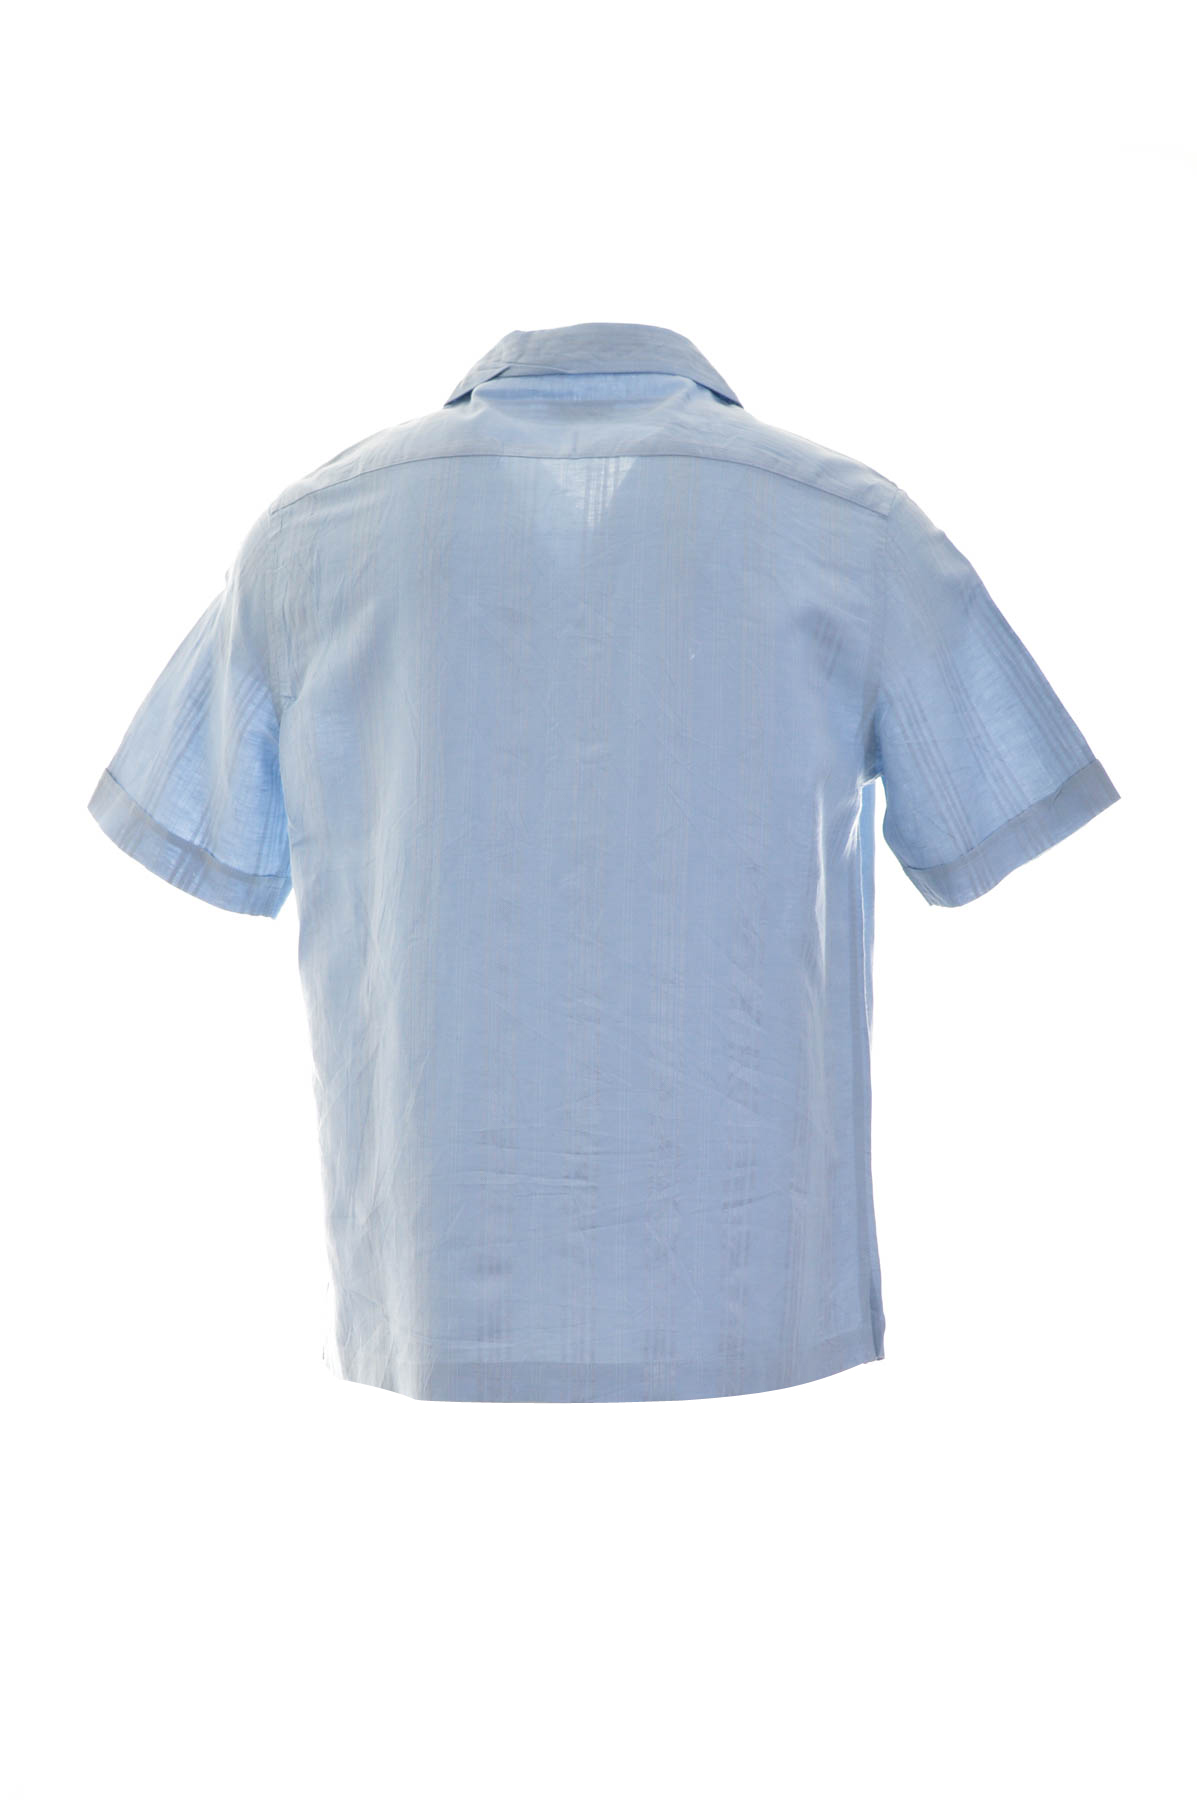 Men's shirt - Claiborne - 1